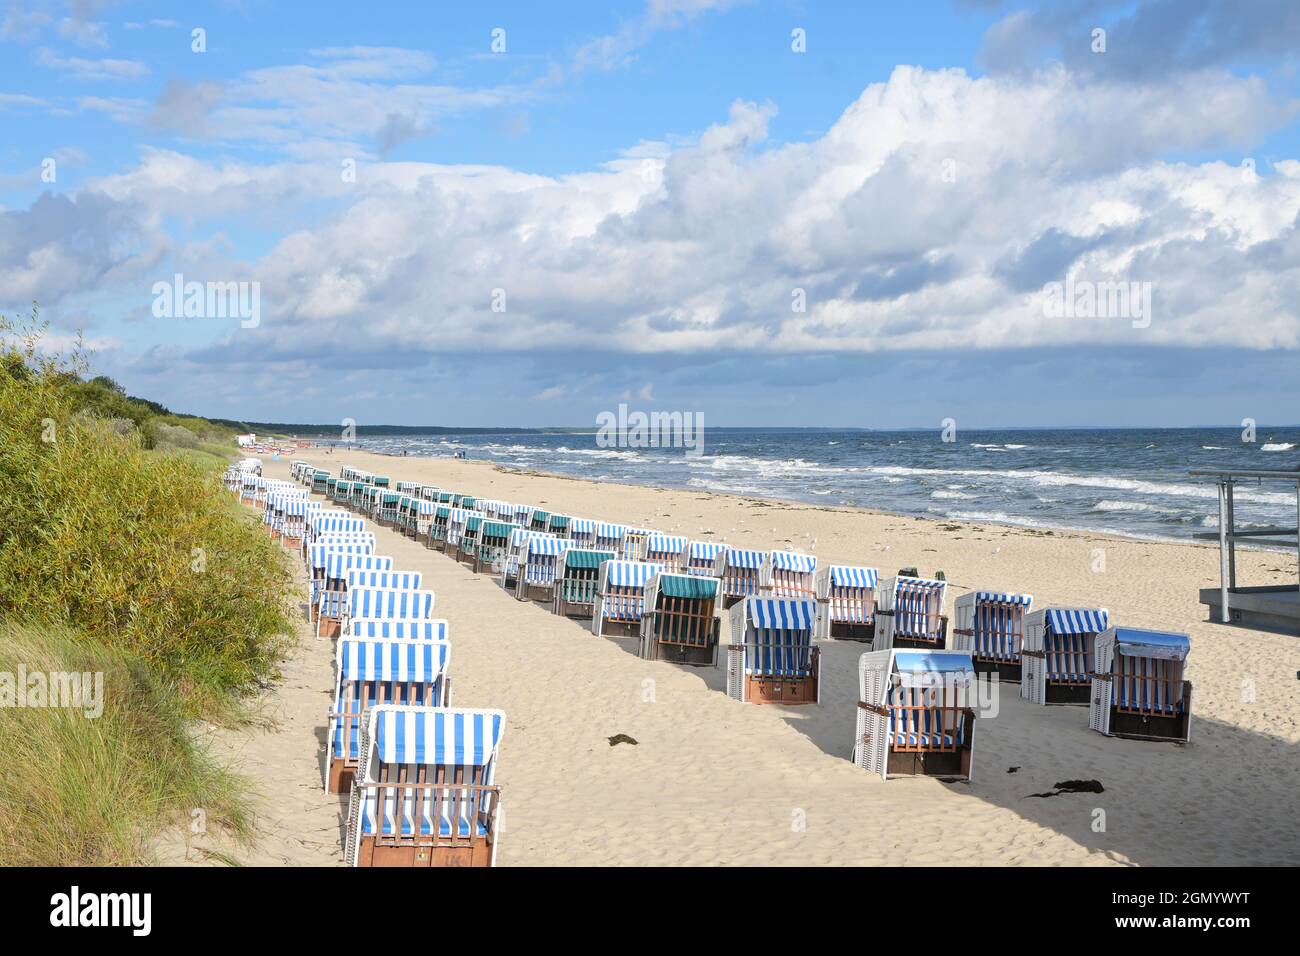 Sedie da spiaggia vuote, in Germania chiamato strandkorb, nella sabbia sulla costa del Mar Baltico, località turistica Zinnowitz sull'isola di Usedom sotto un cielo blu Foto Stock